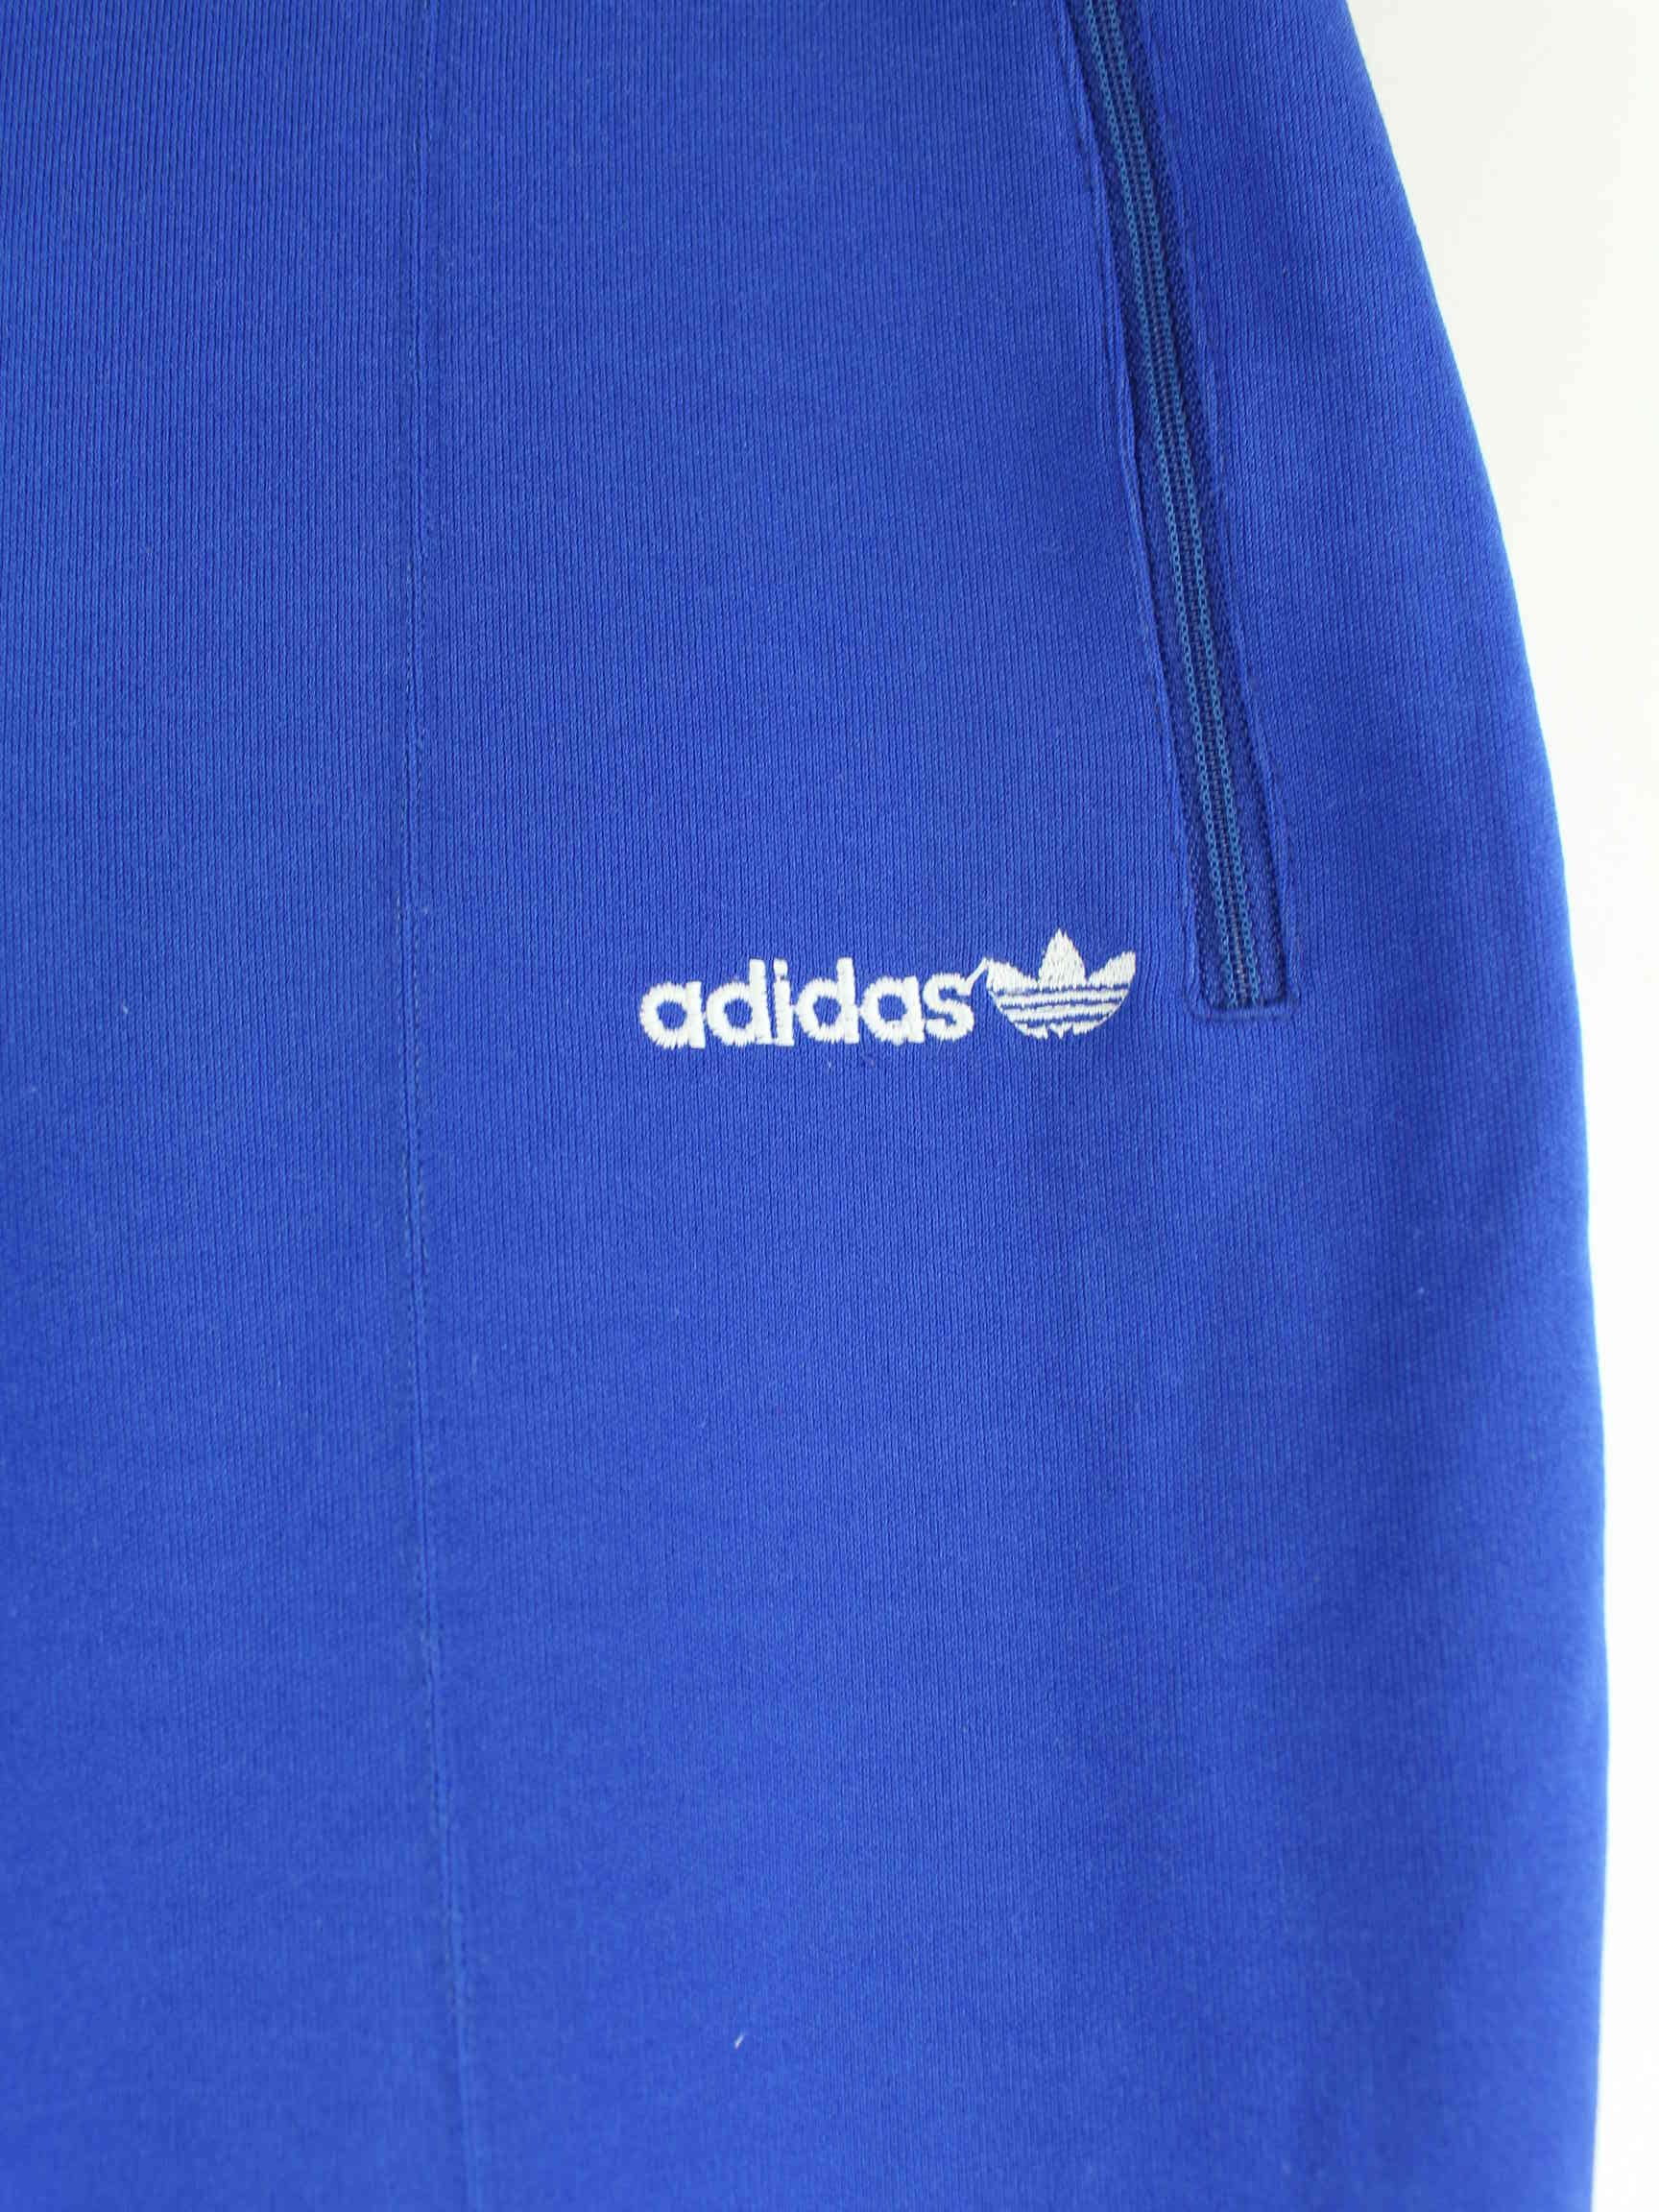 Adidas 90s Vintage Embroidered Track Pants Blau S (detail image 1)